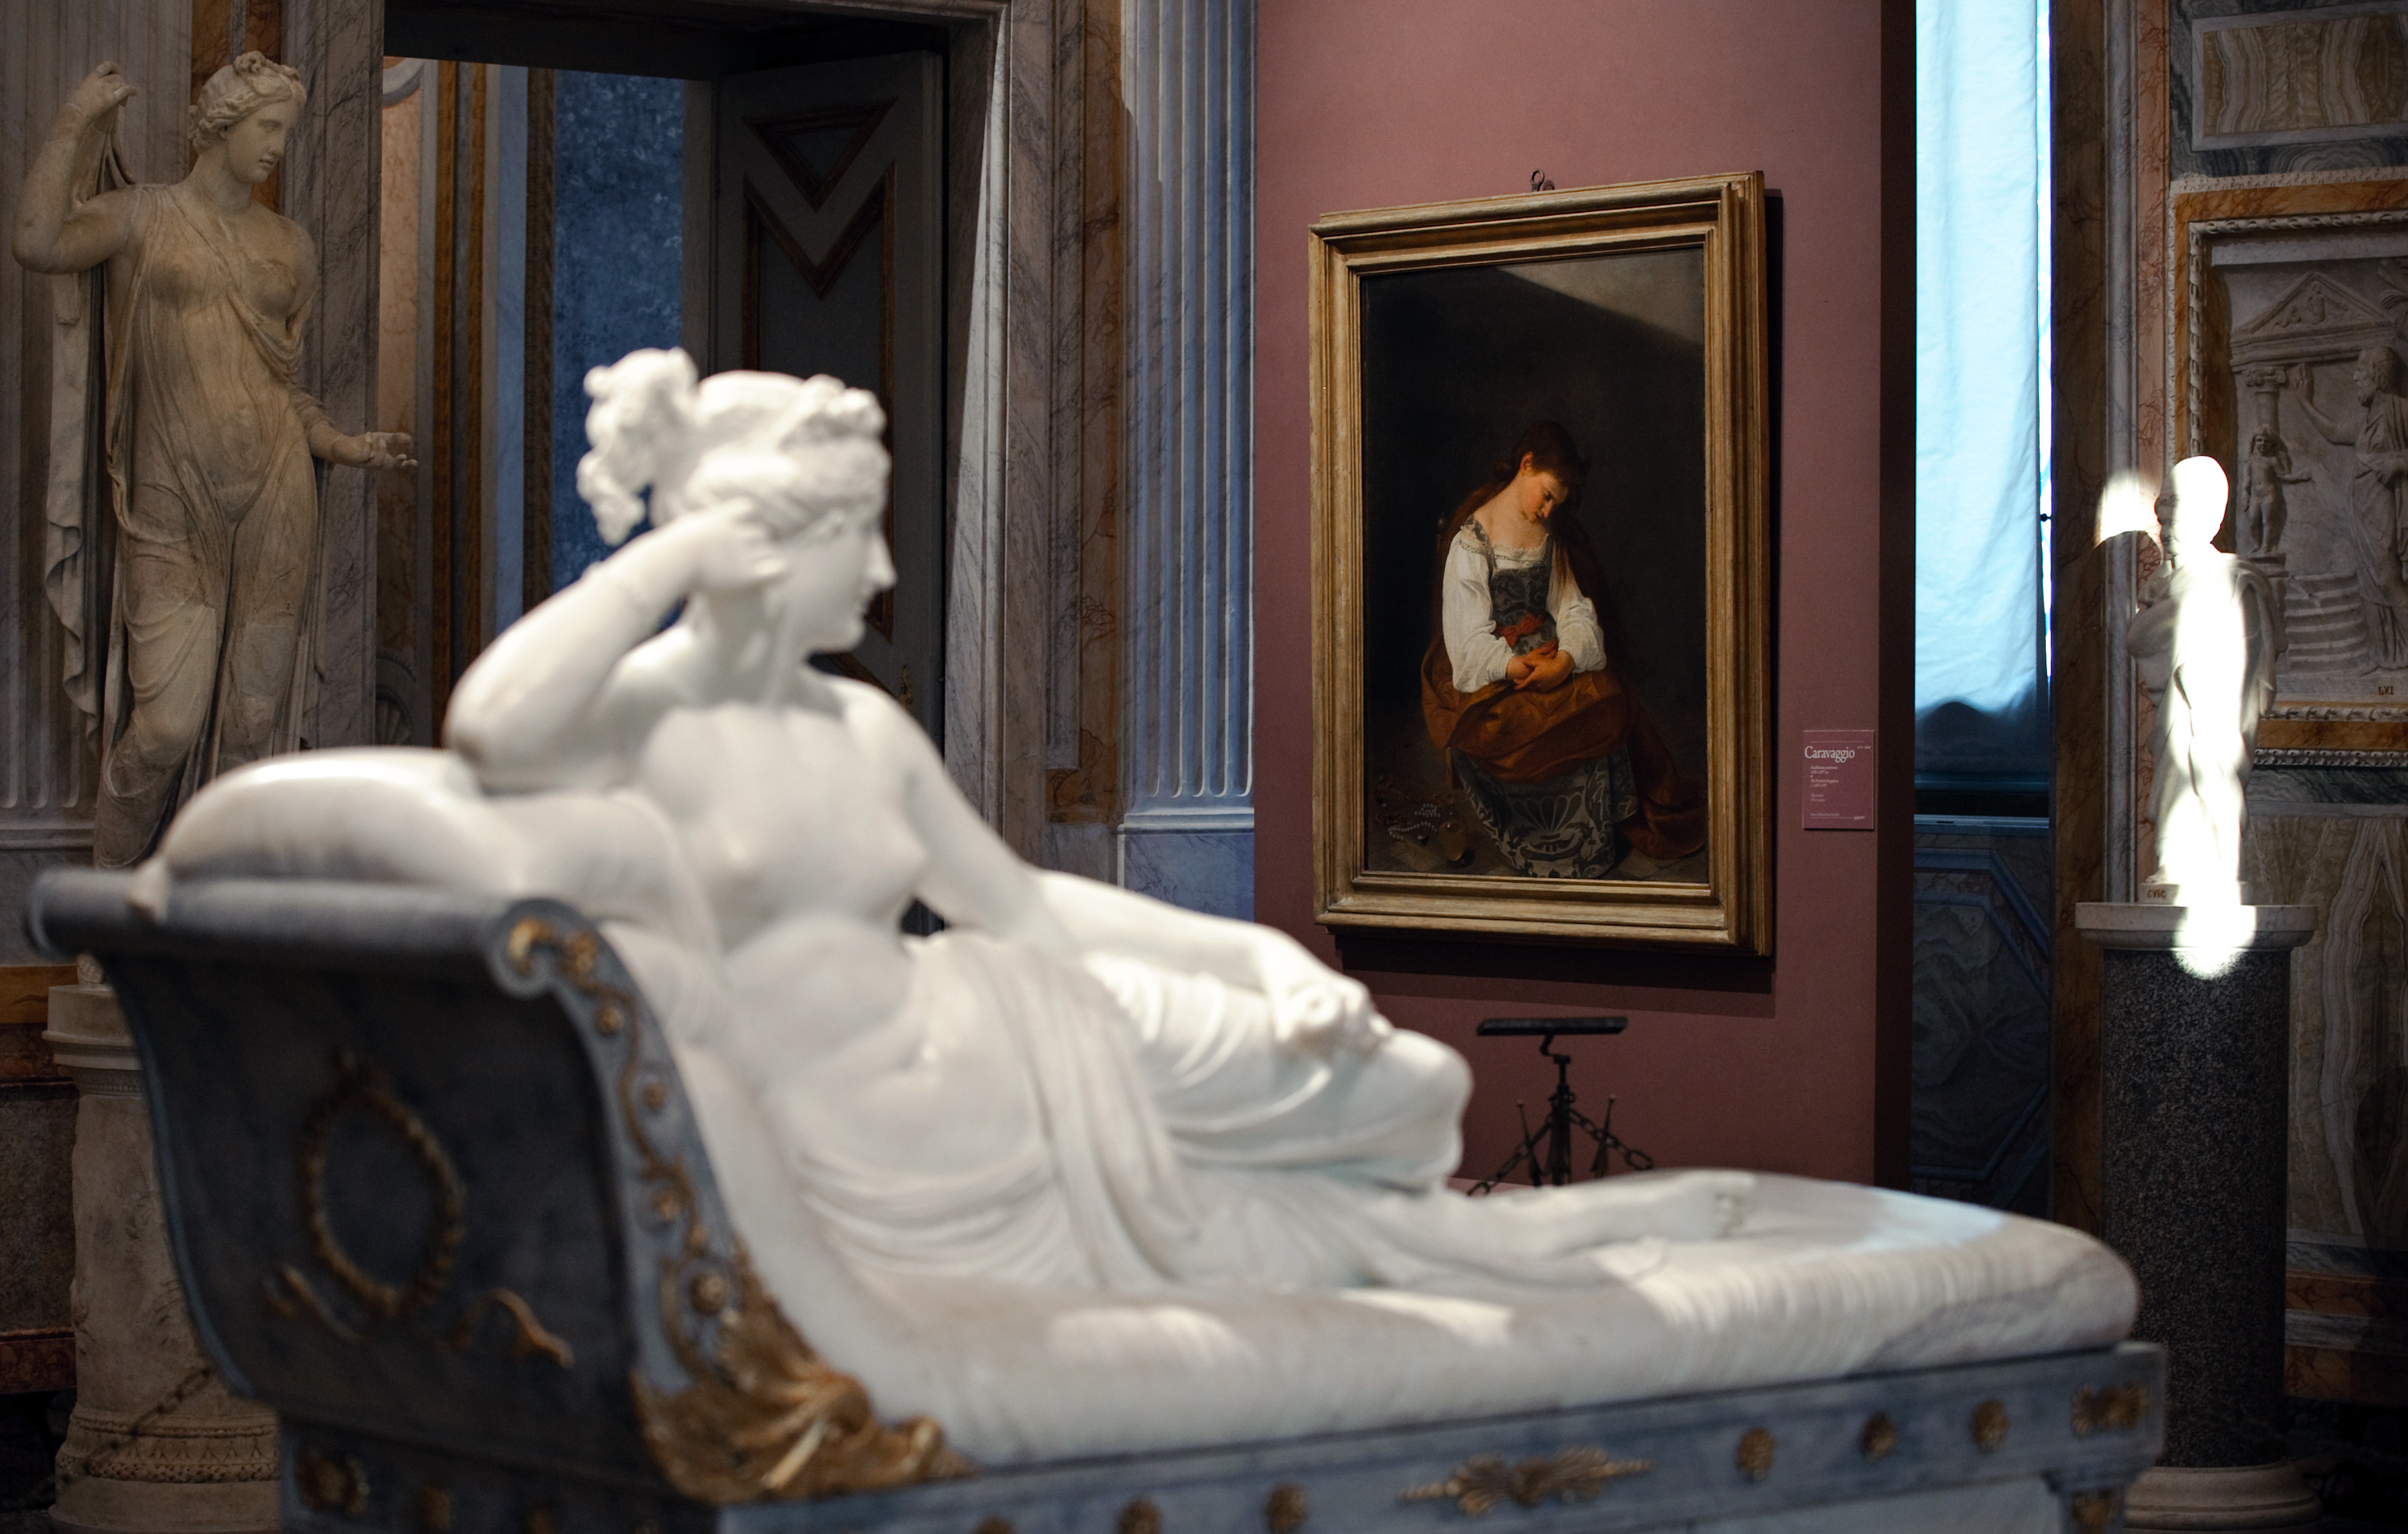 Le opere più belle del mondo&#8230;secondo noi: #4 Paolina Borghese Bonaparte